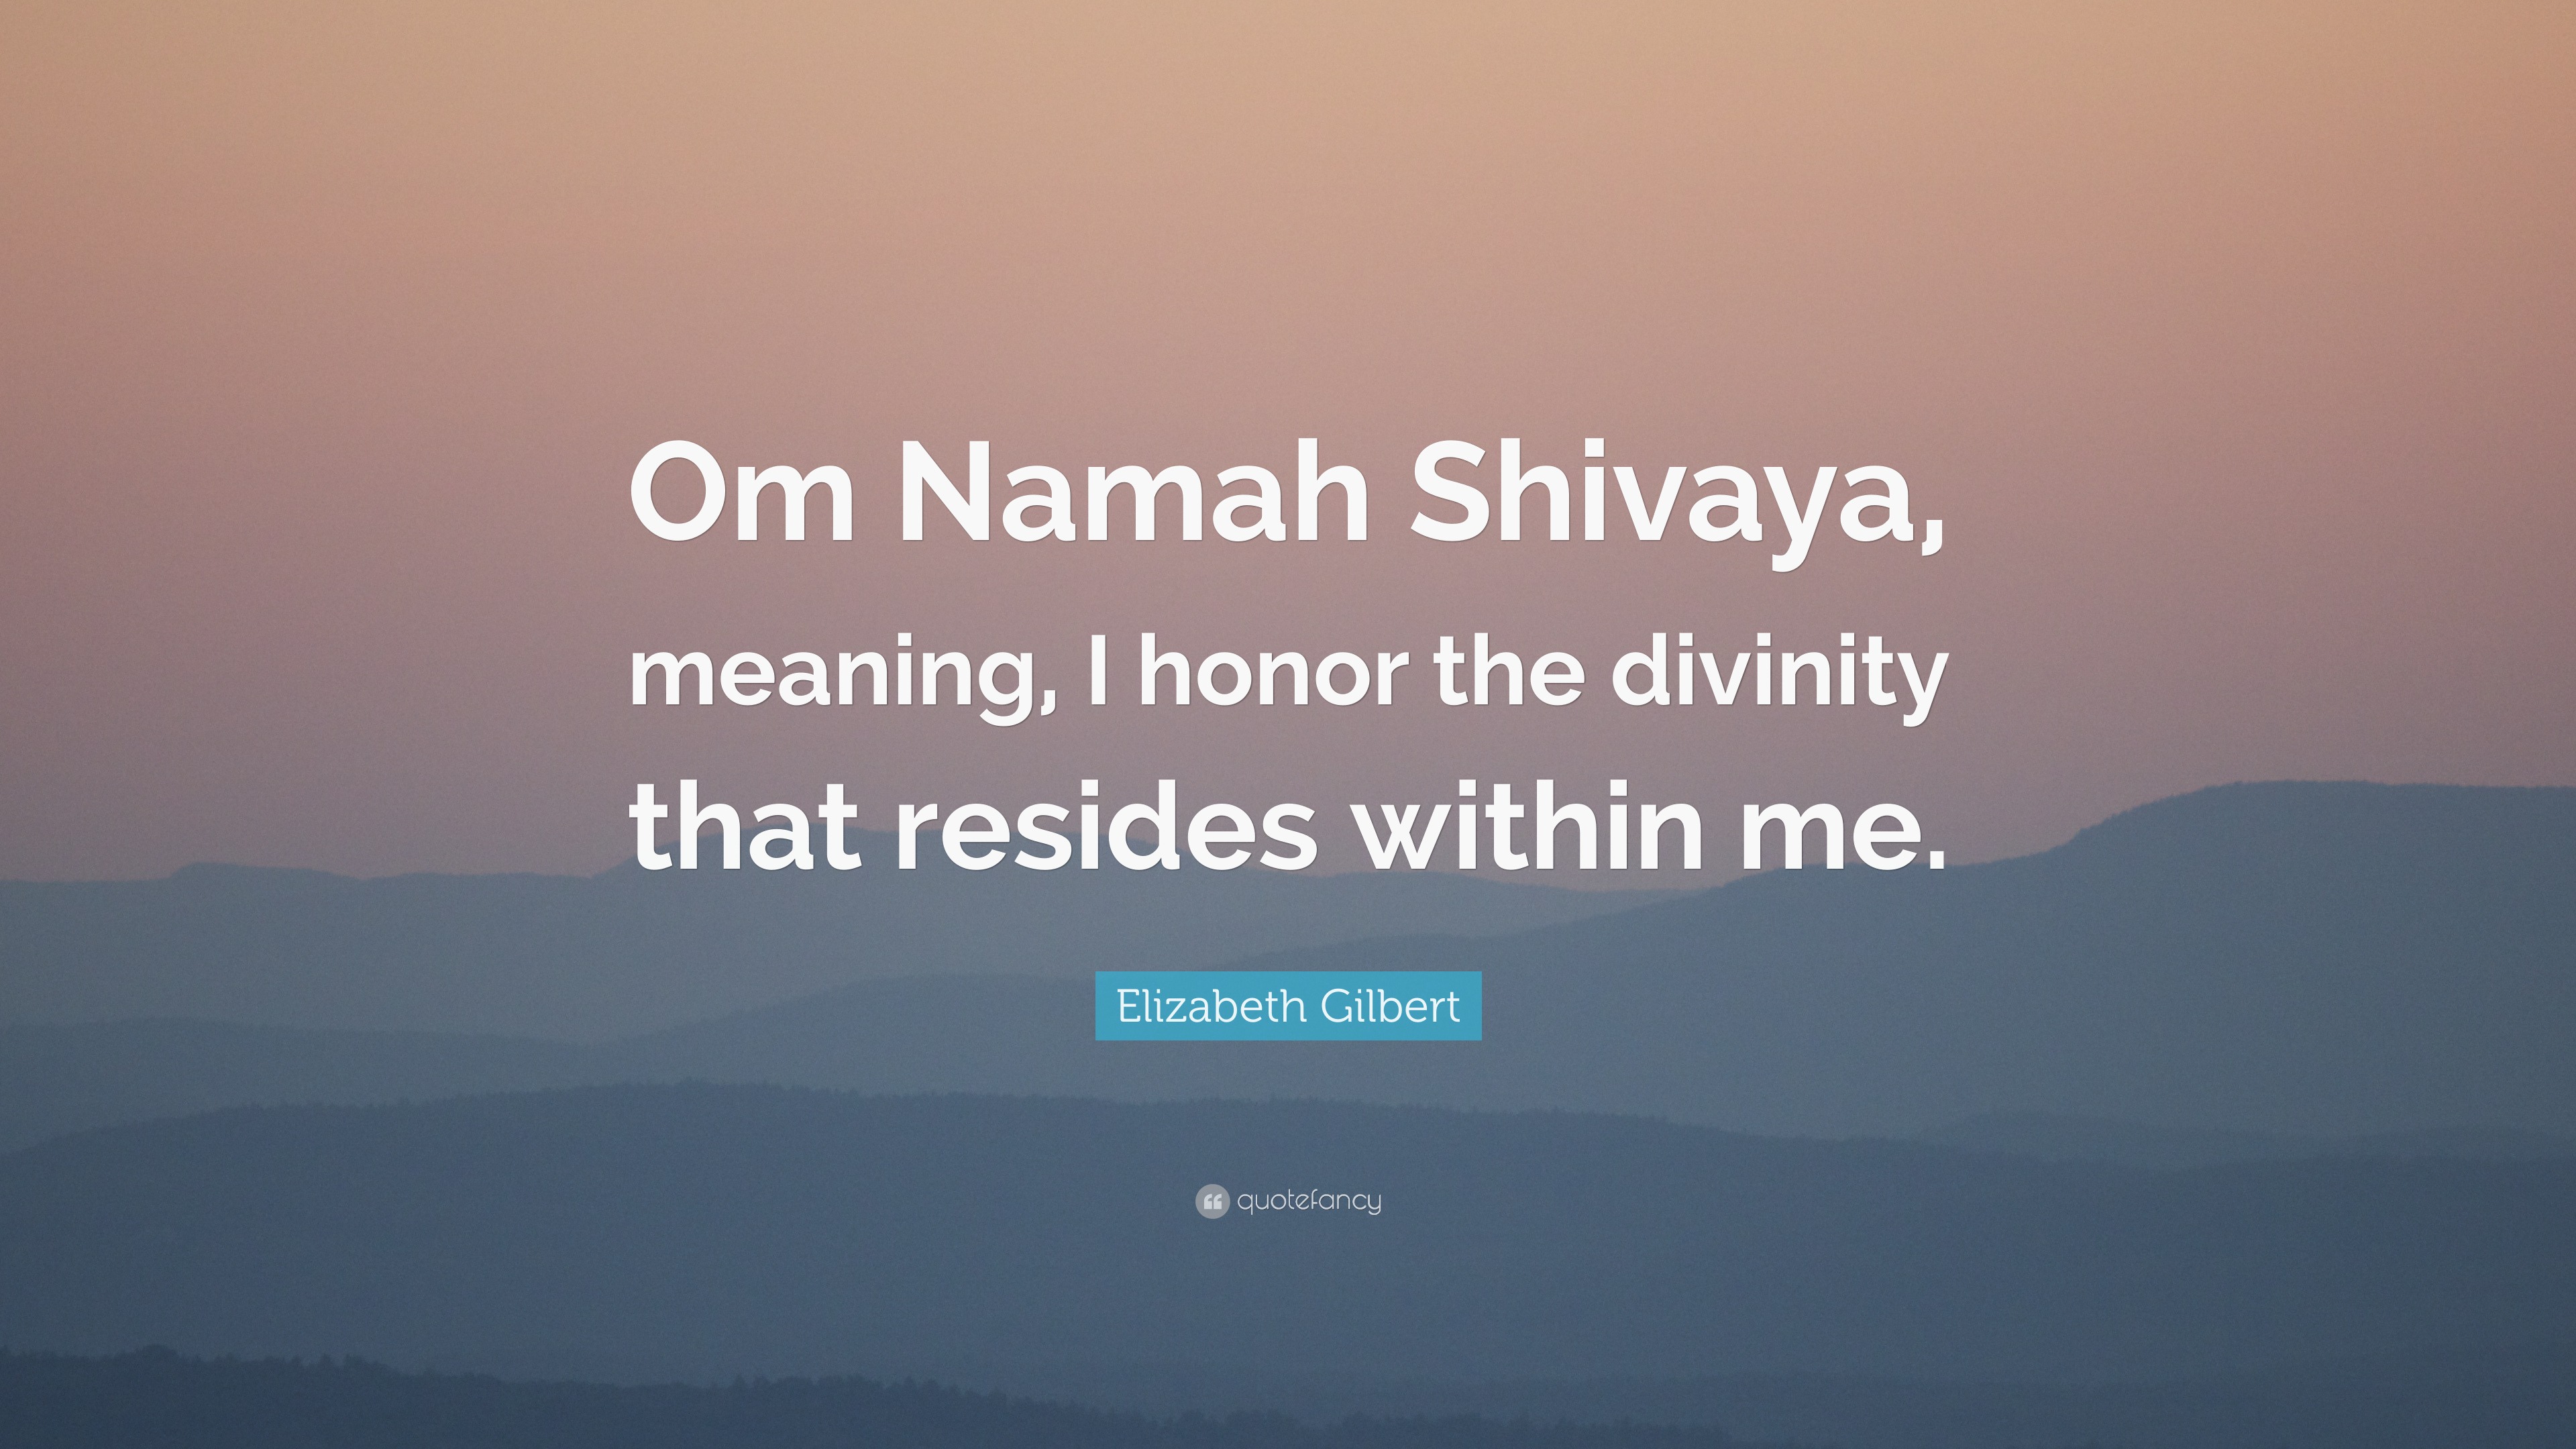 om namah shivaya translation